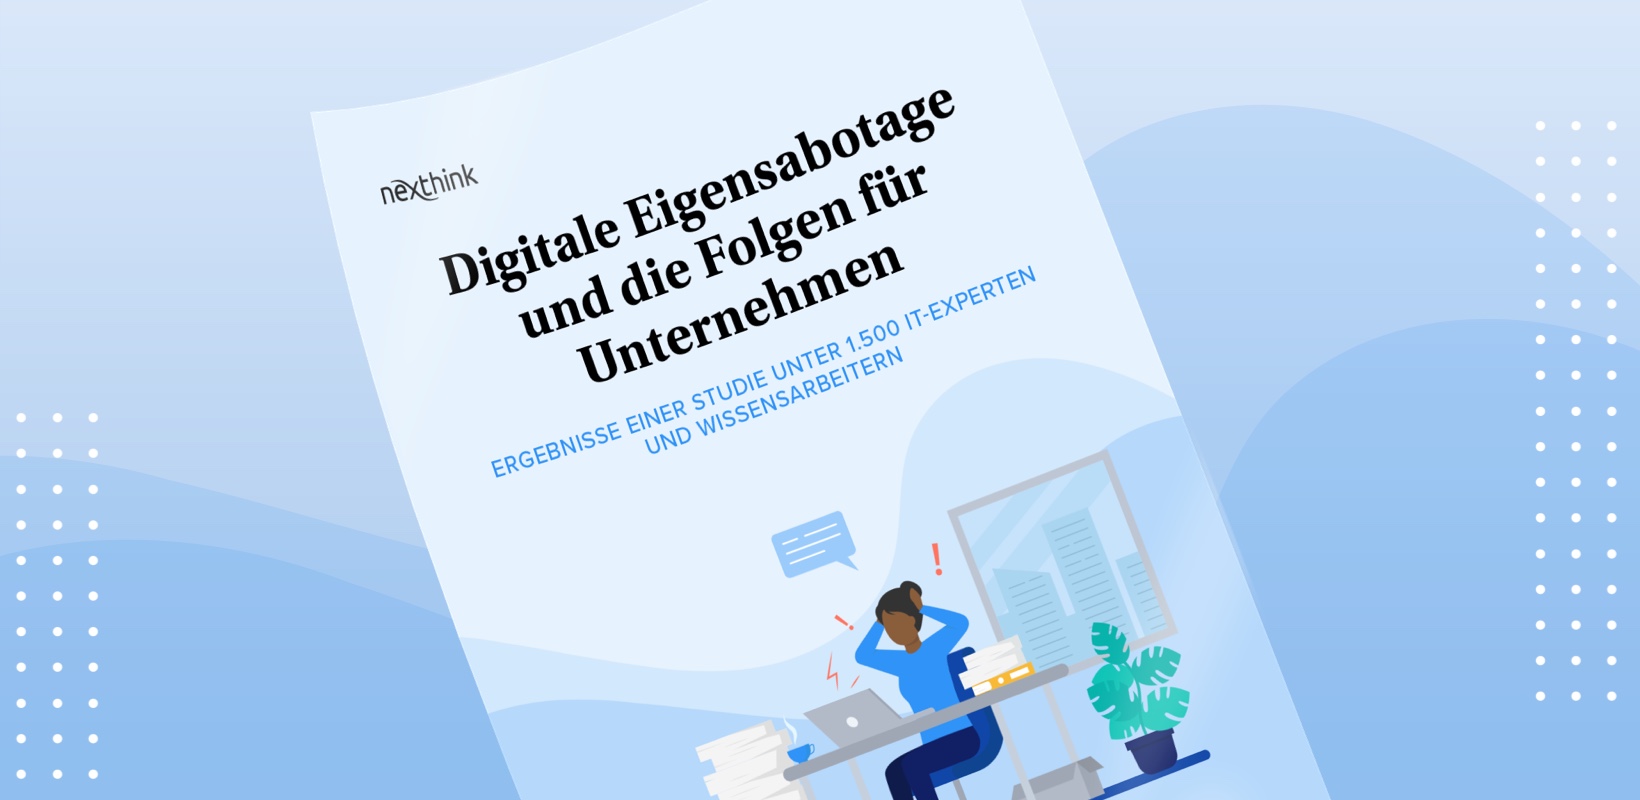 Report Digitale Eigensabotage und die Folgen für Unternehmen_Nexthink_cmm360